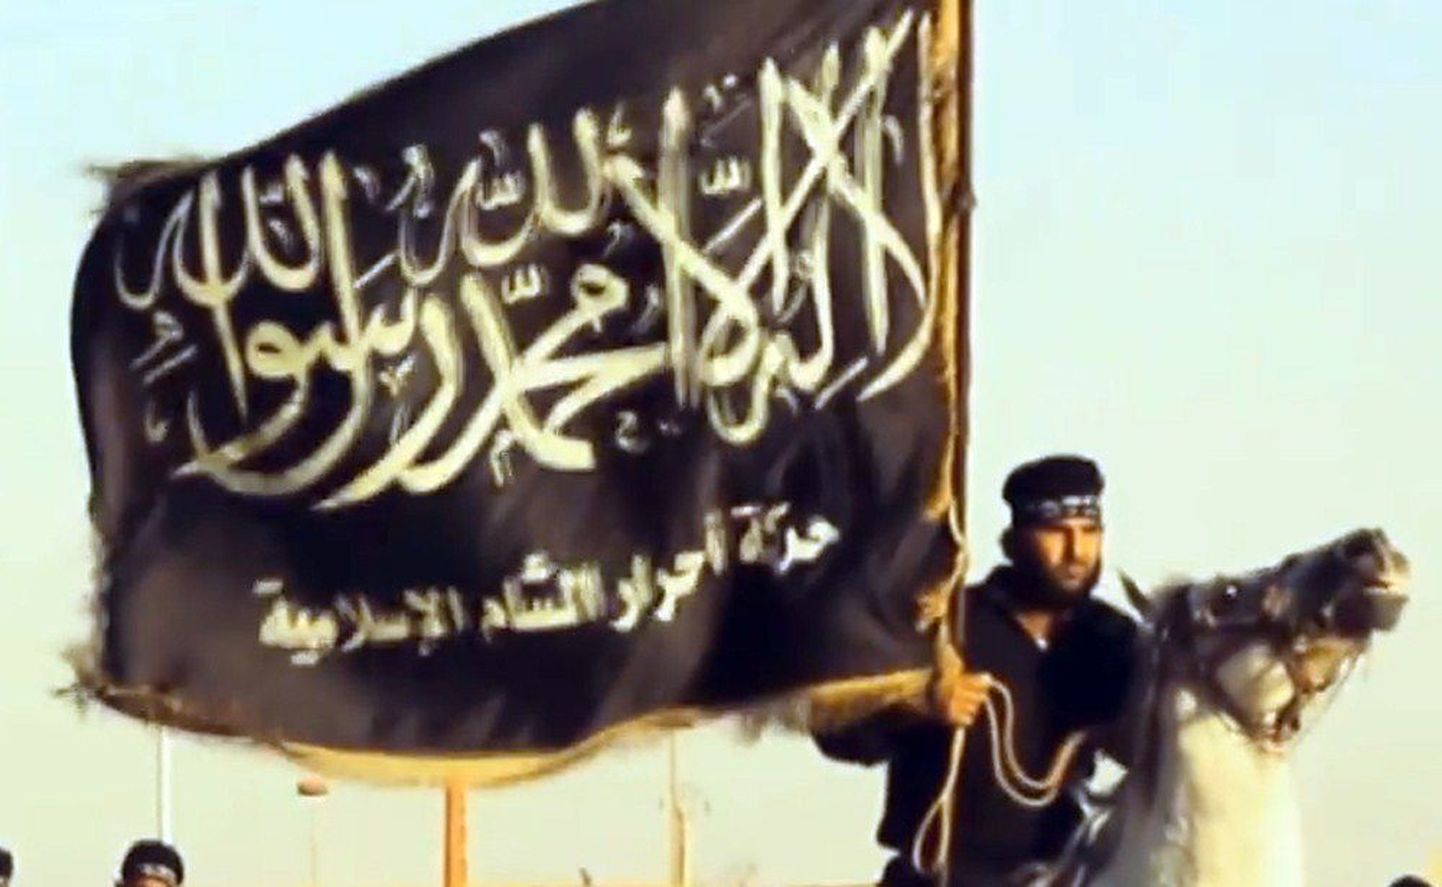 Islamiriigi võitleja rühmituse lipuga. Kaader on pärit sunniitliku äärmusorganisatsiooni propagandavideost.